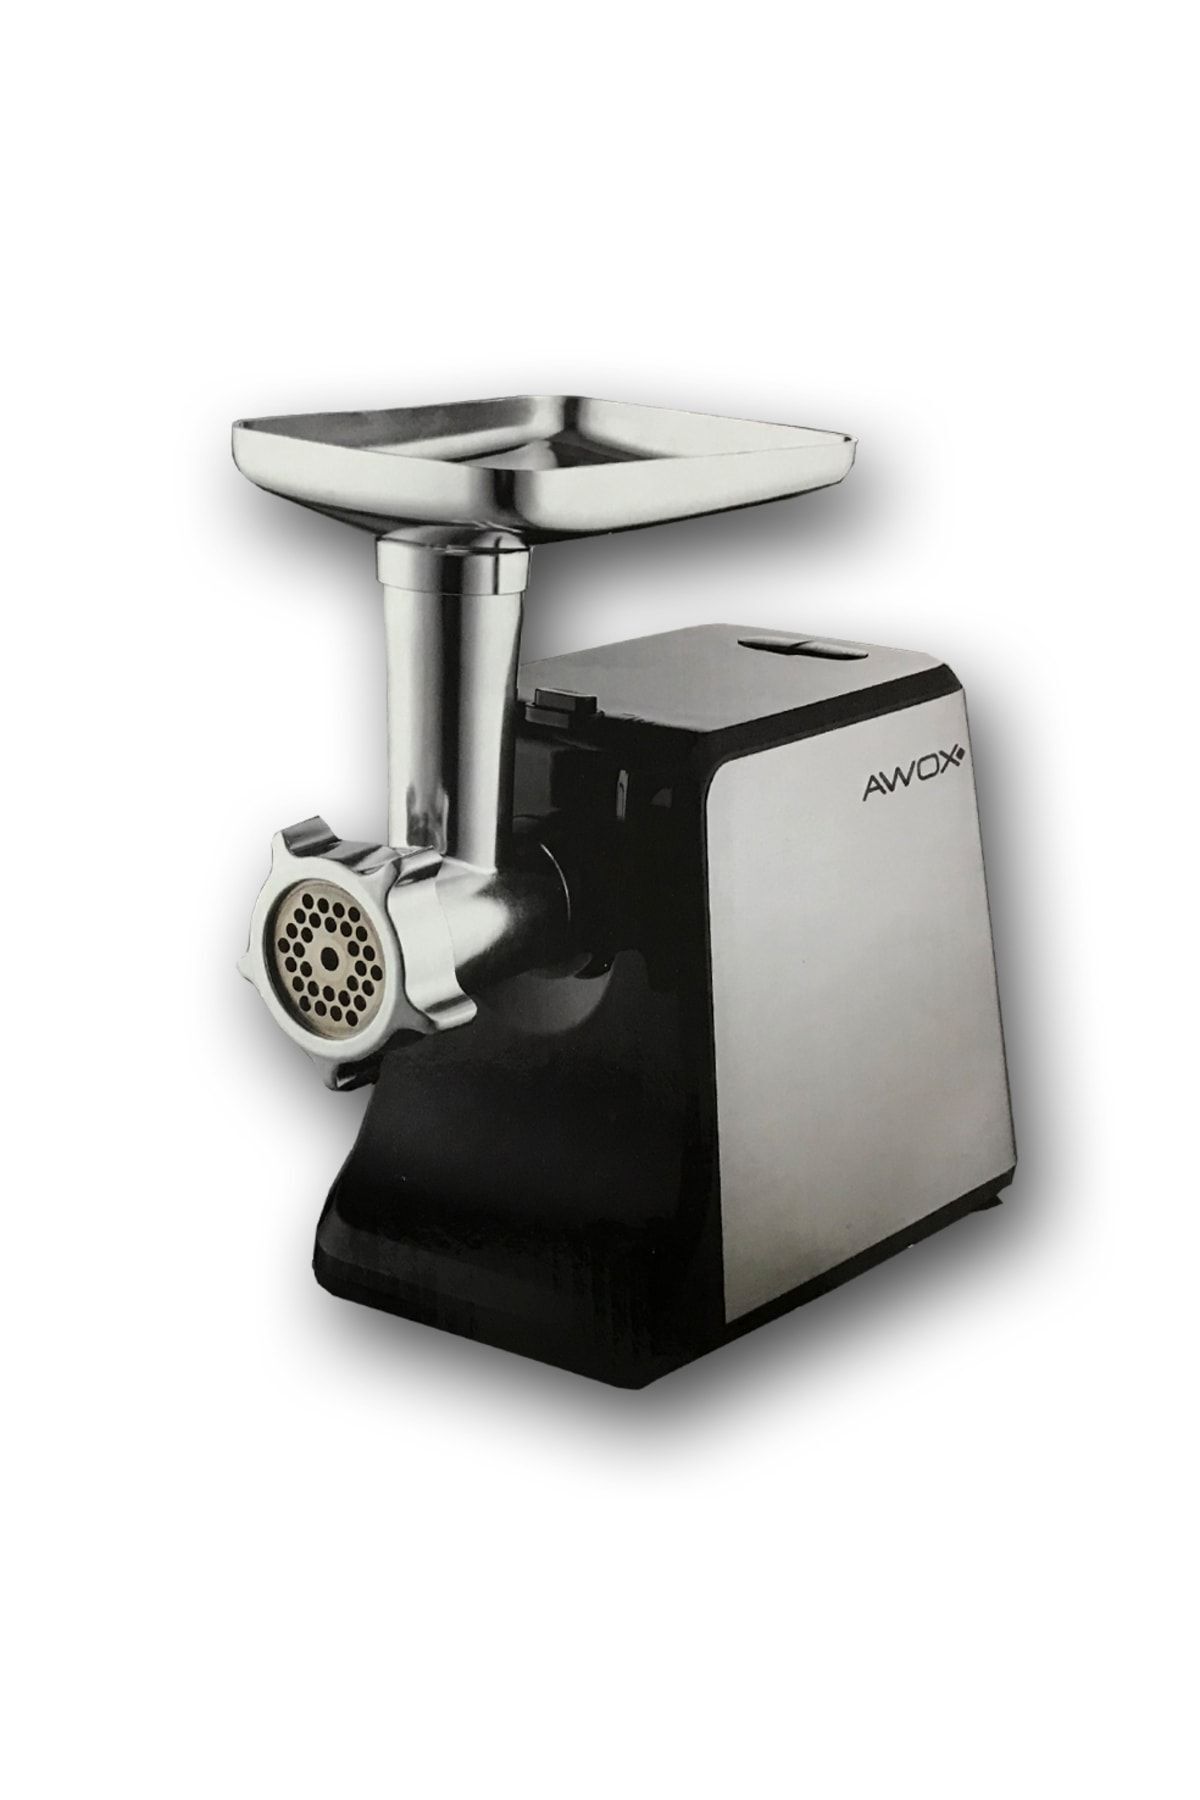 AWOX Kıyma Makinası Et Çekme Makinası Sucuk Sosis Domates Salça Yapma Makinası Içli Köfte Makinası